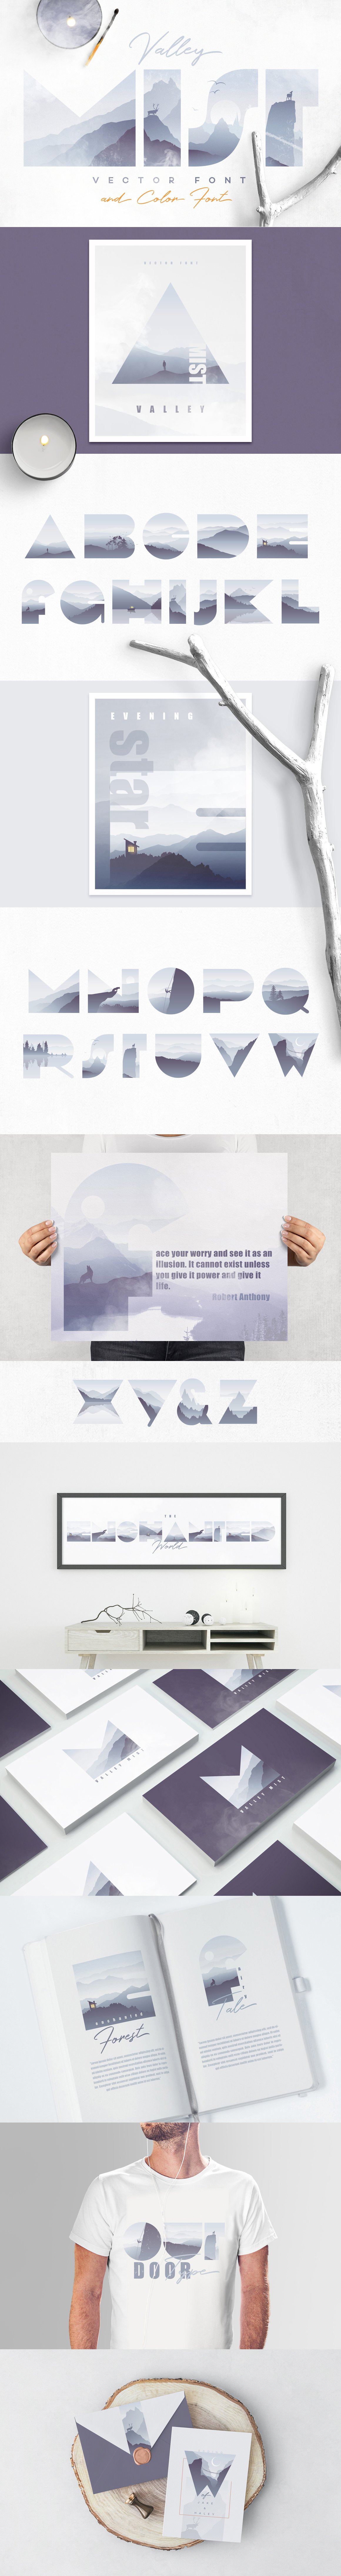 Valley Mist- SVG Color Font cover image.